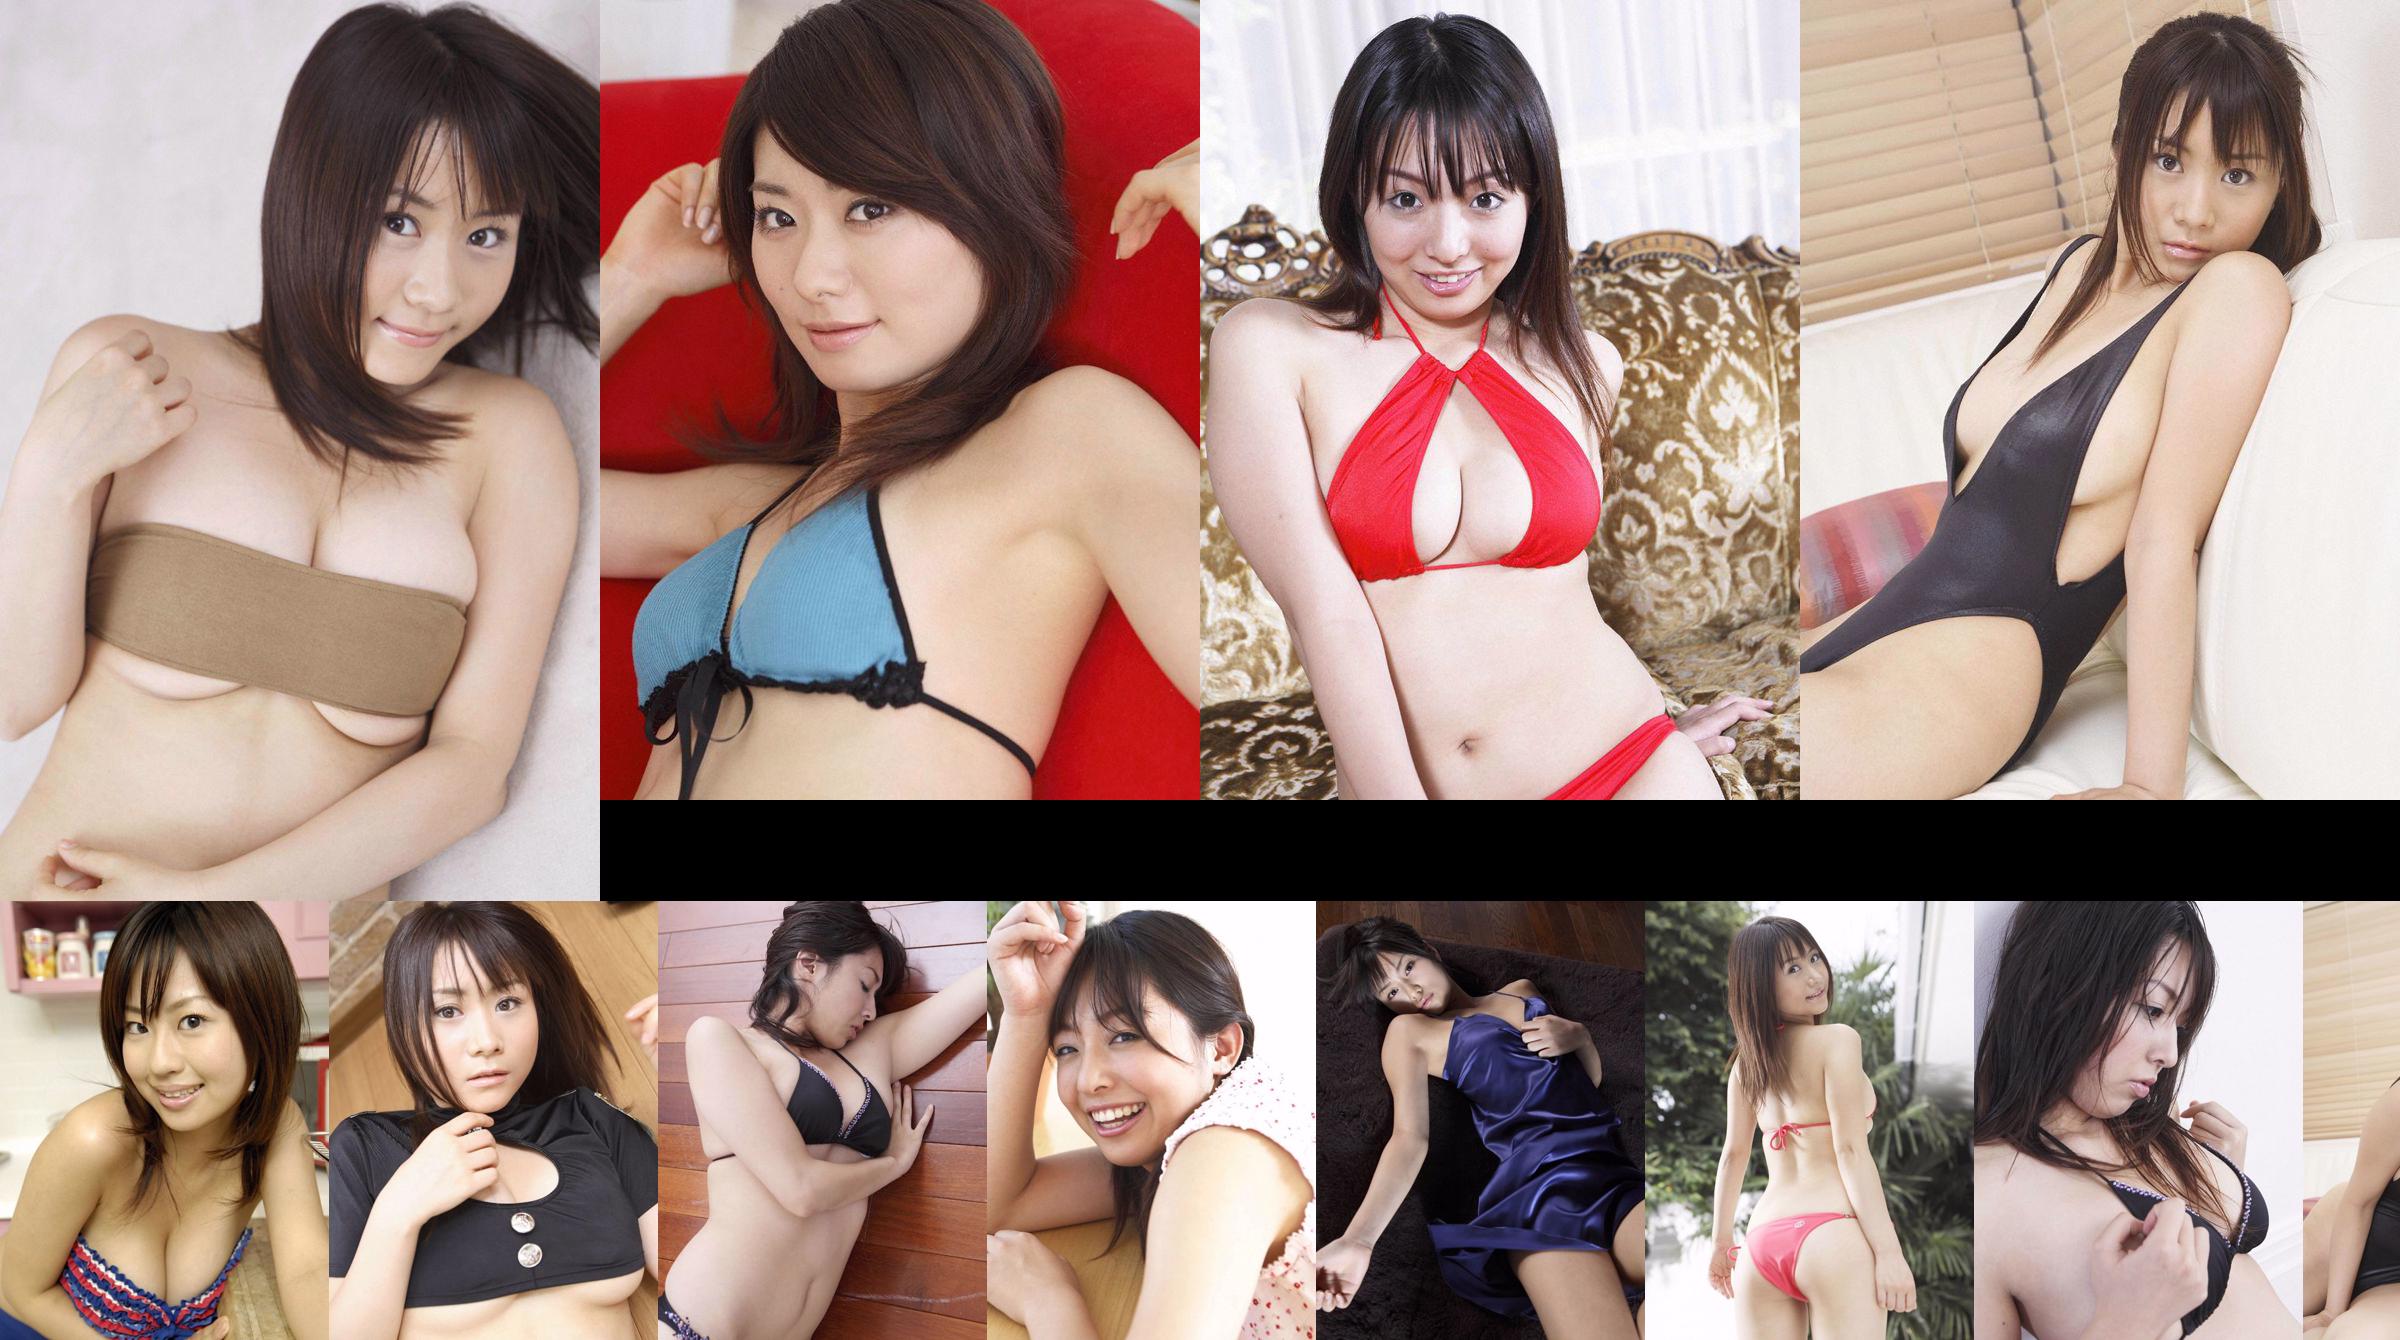 [Wanibooks] NO.37 Ai Arakawa, Hitomi Kaikawa, Hitomi Kitamura, Naomi I, Chii Matsuda Photo Collection No.7c2493 Page 35